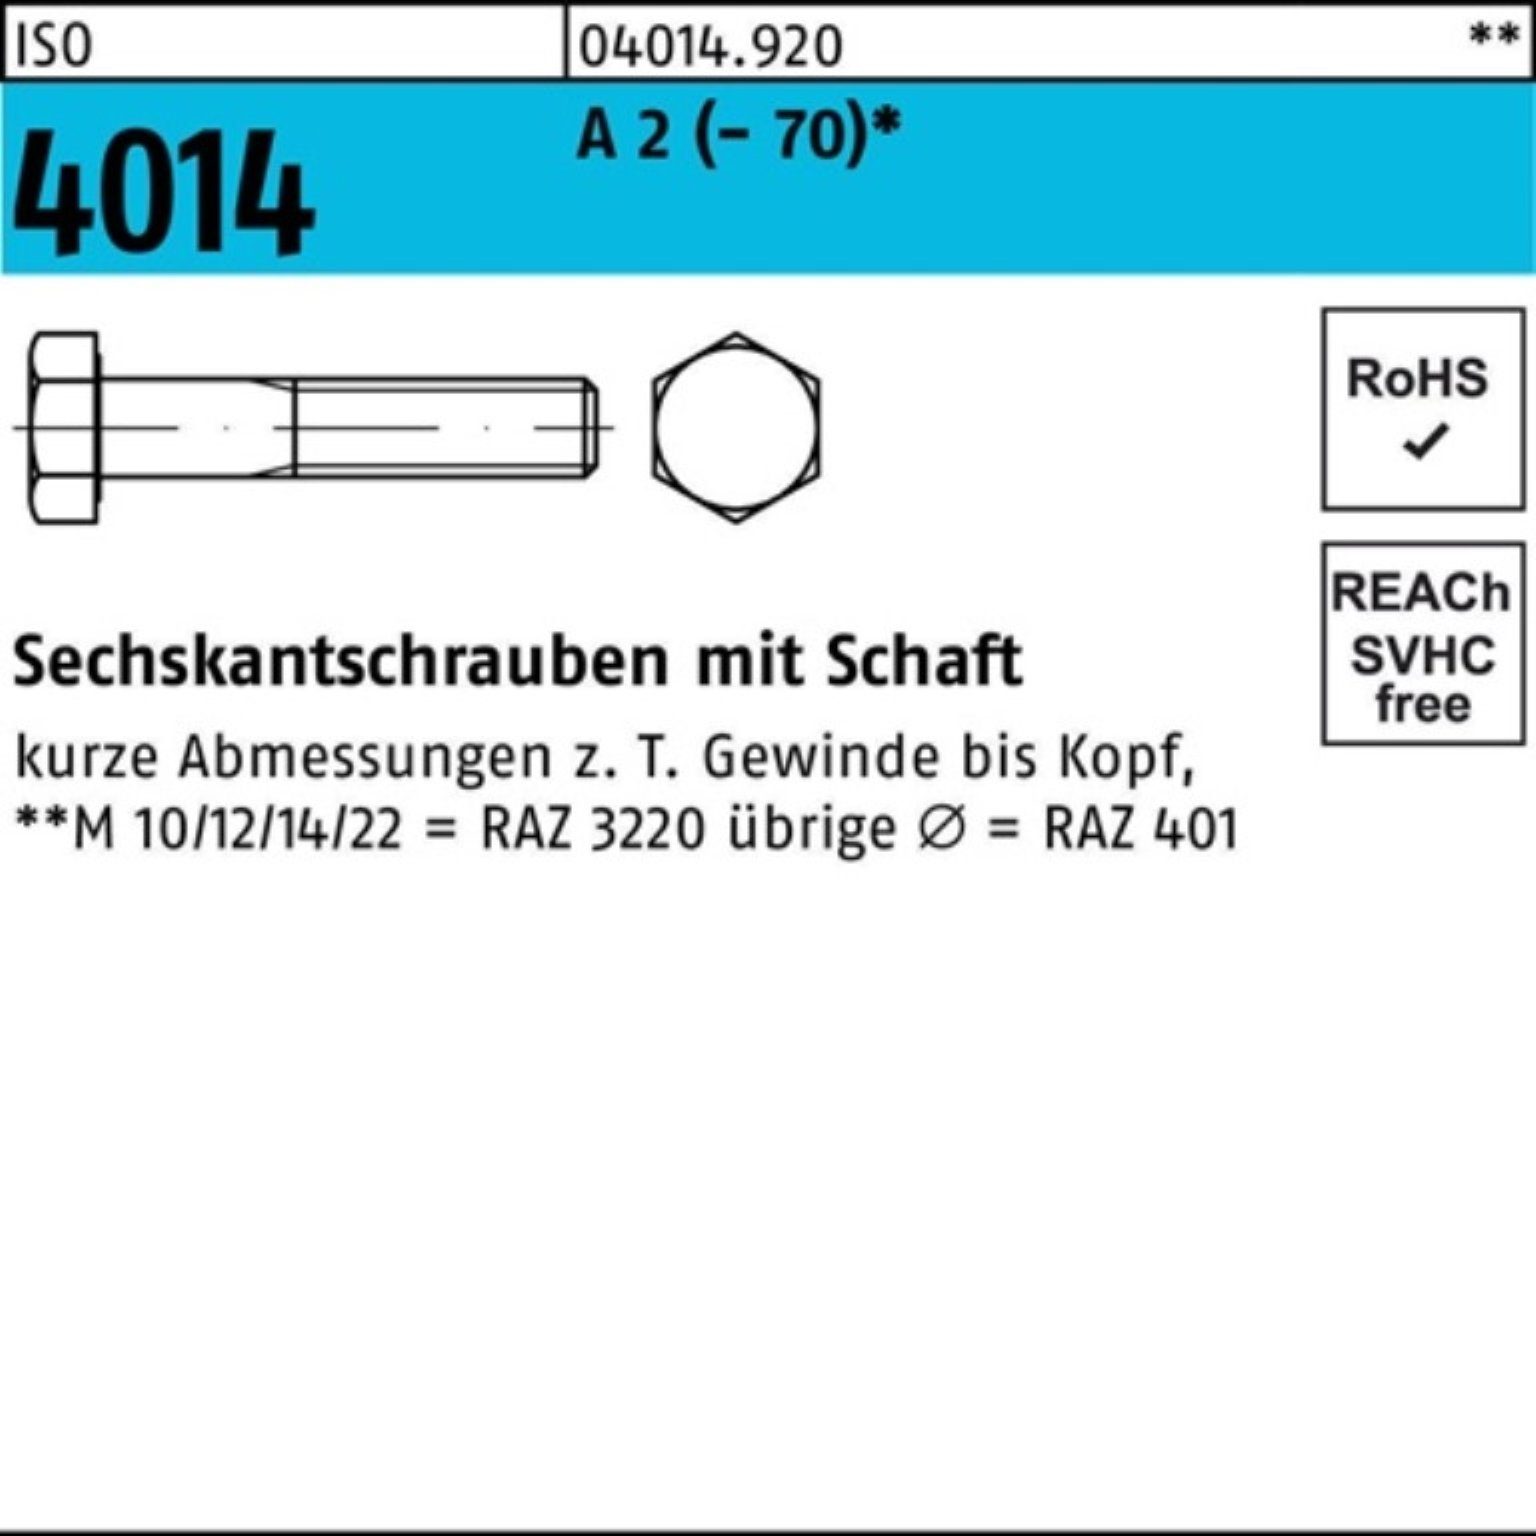 Schaft Sechskantschraube Sechskantschraube 25 120 A (70) M18x Pack Bufab 4014 St 2 ISO 100er